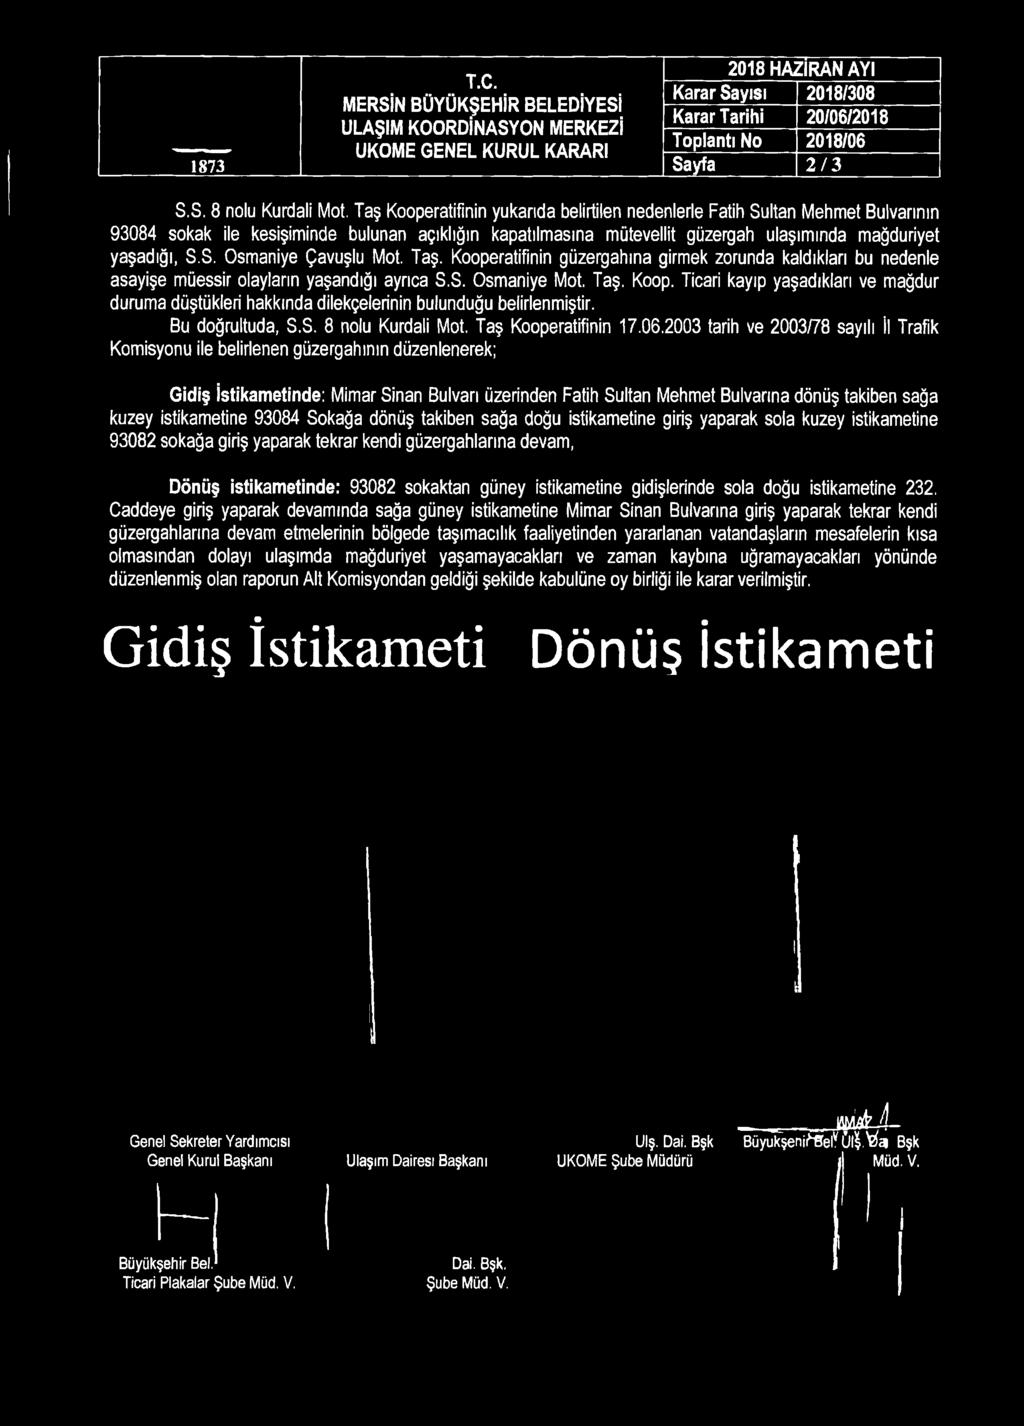 2003 tarih ve 2003/78 sayılı İl Trafik Komisyonu ile belirlenen güzergahının düzenlenerek; Gidiş İstikametinde: Mimar Sinan Bulvarı üzerinden Fatih Sultan Mehmet Bulvarına dönüş takiben sağa kuzey